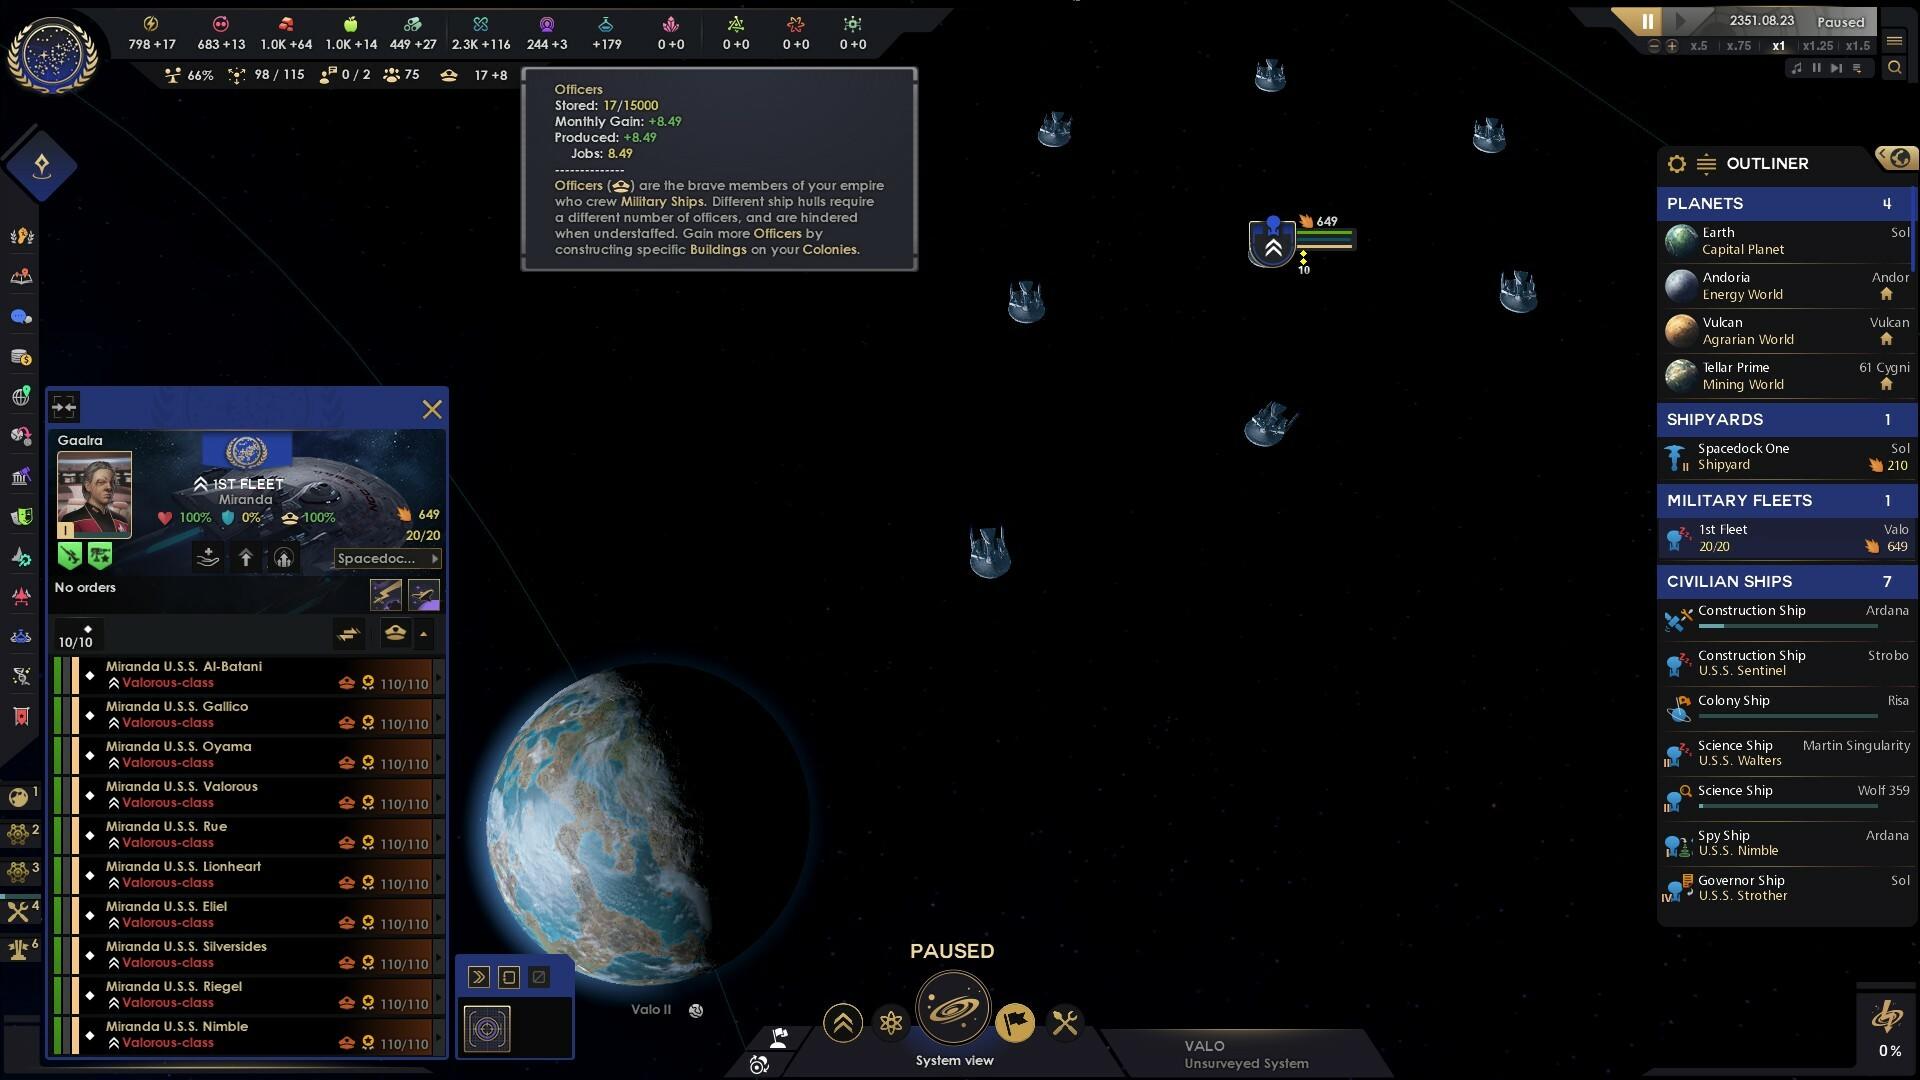 Star Trek: Infinite screenshot game